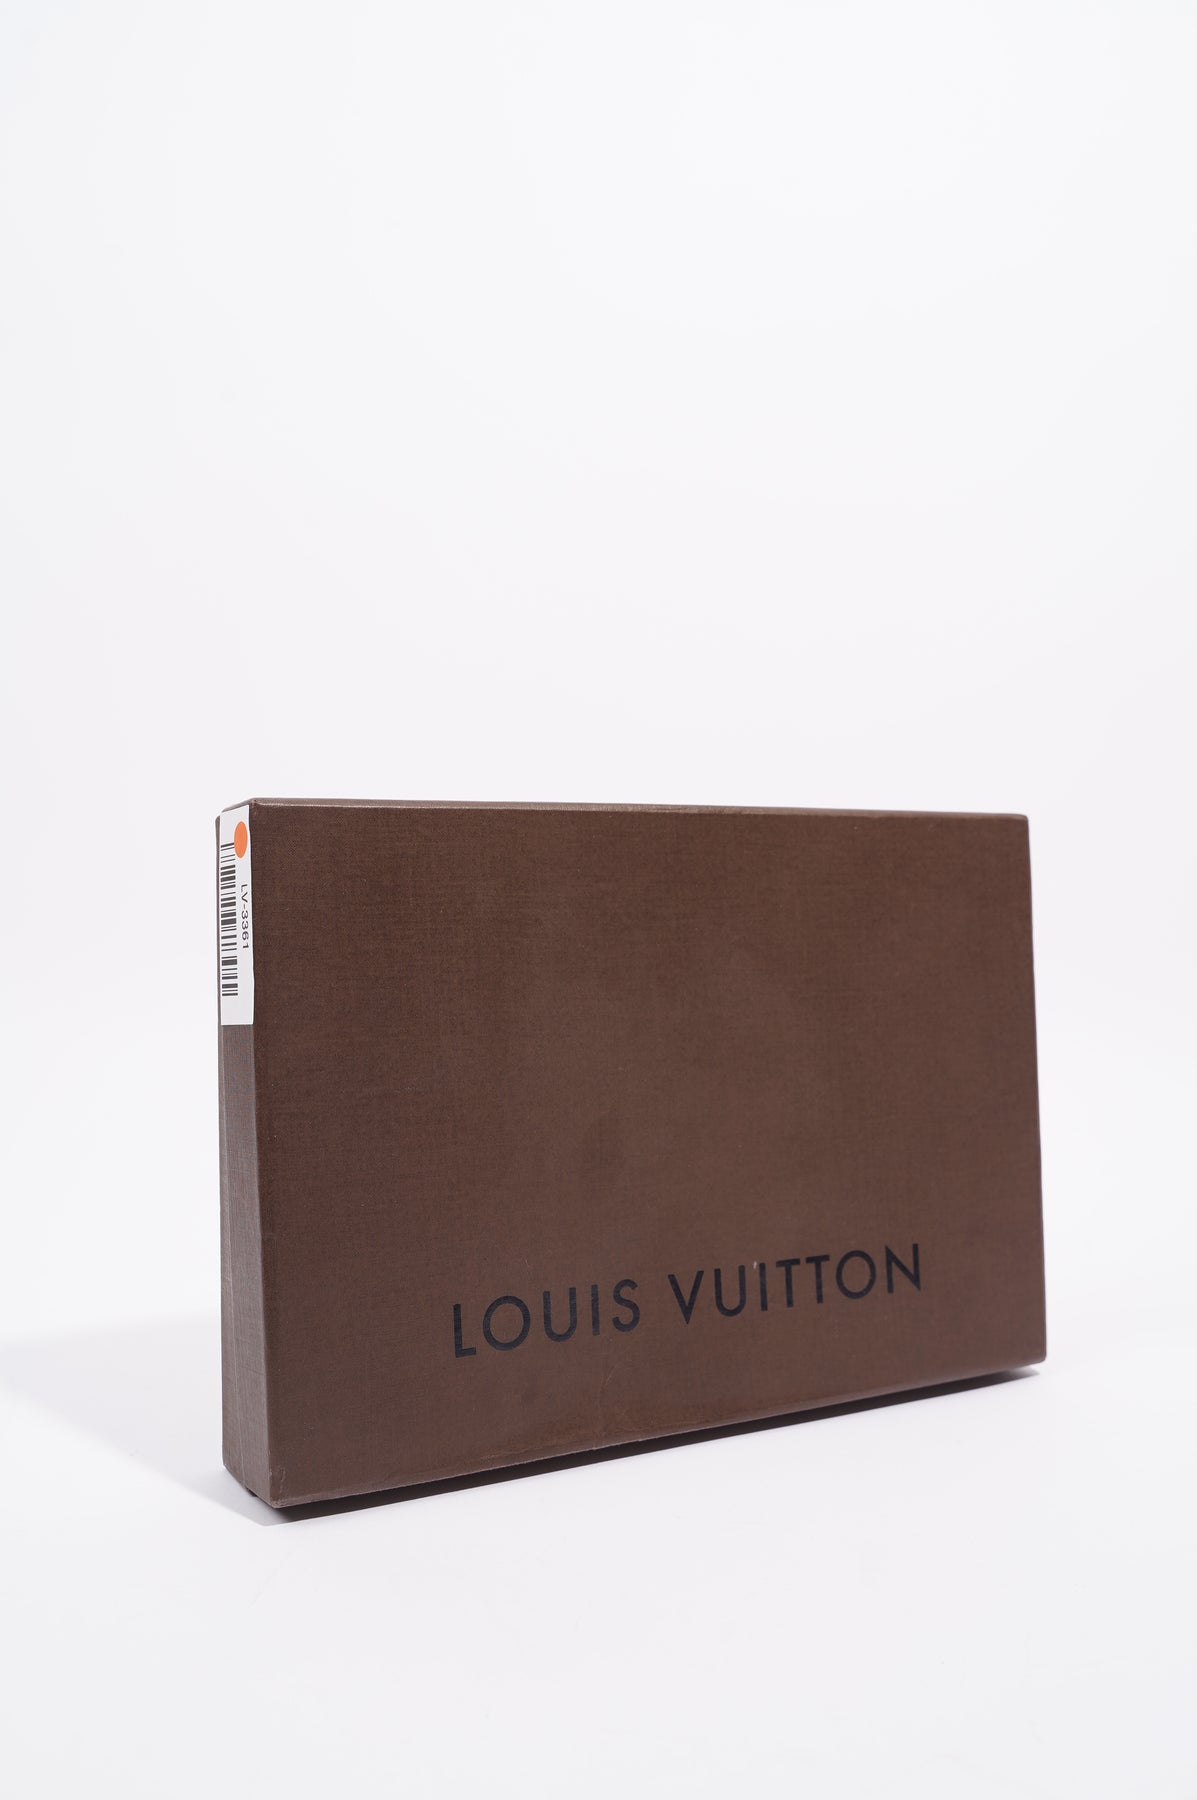 Louis Vuitton Vintage - Epi Pochette Accessoires Bag - Blue - Leather and Epi  Leather Handbag - Luxury High Quality - Avvenice